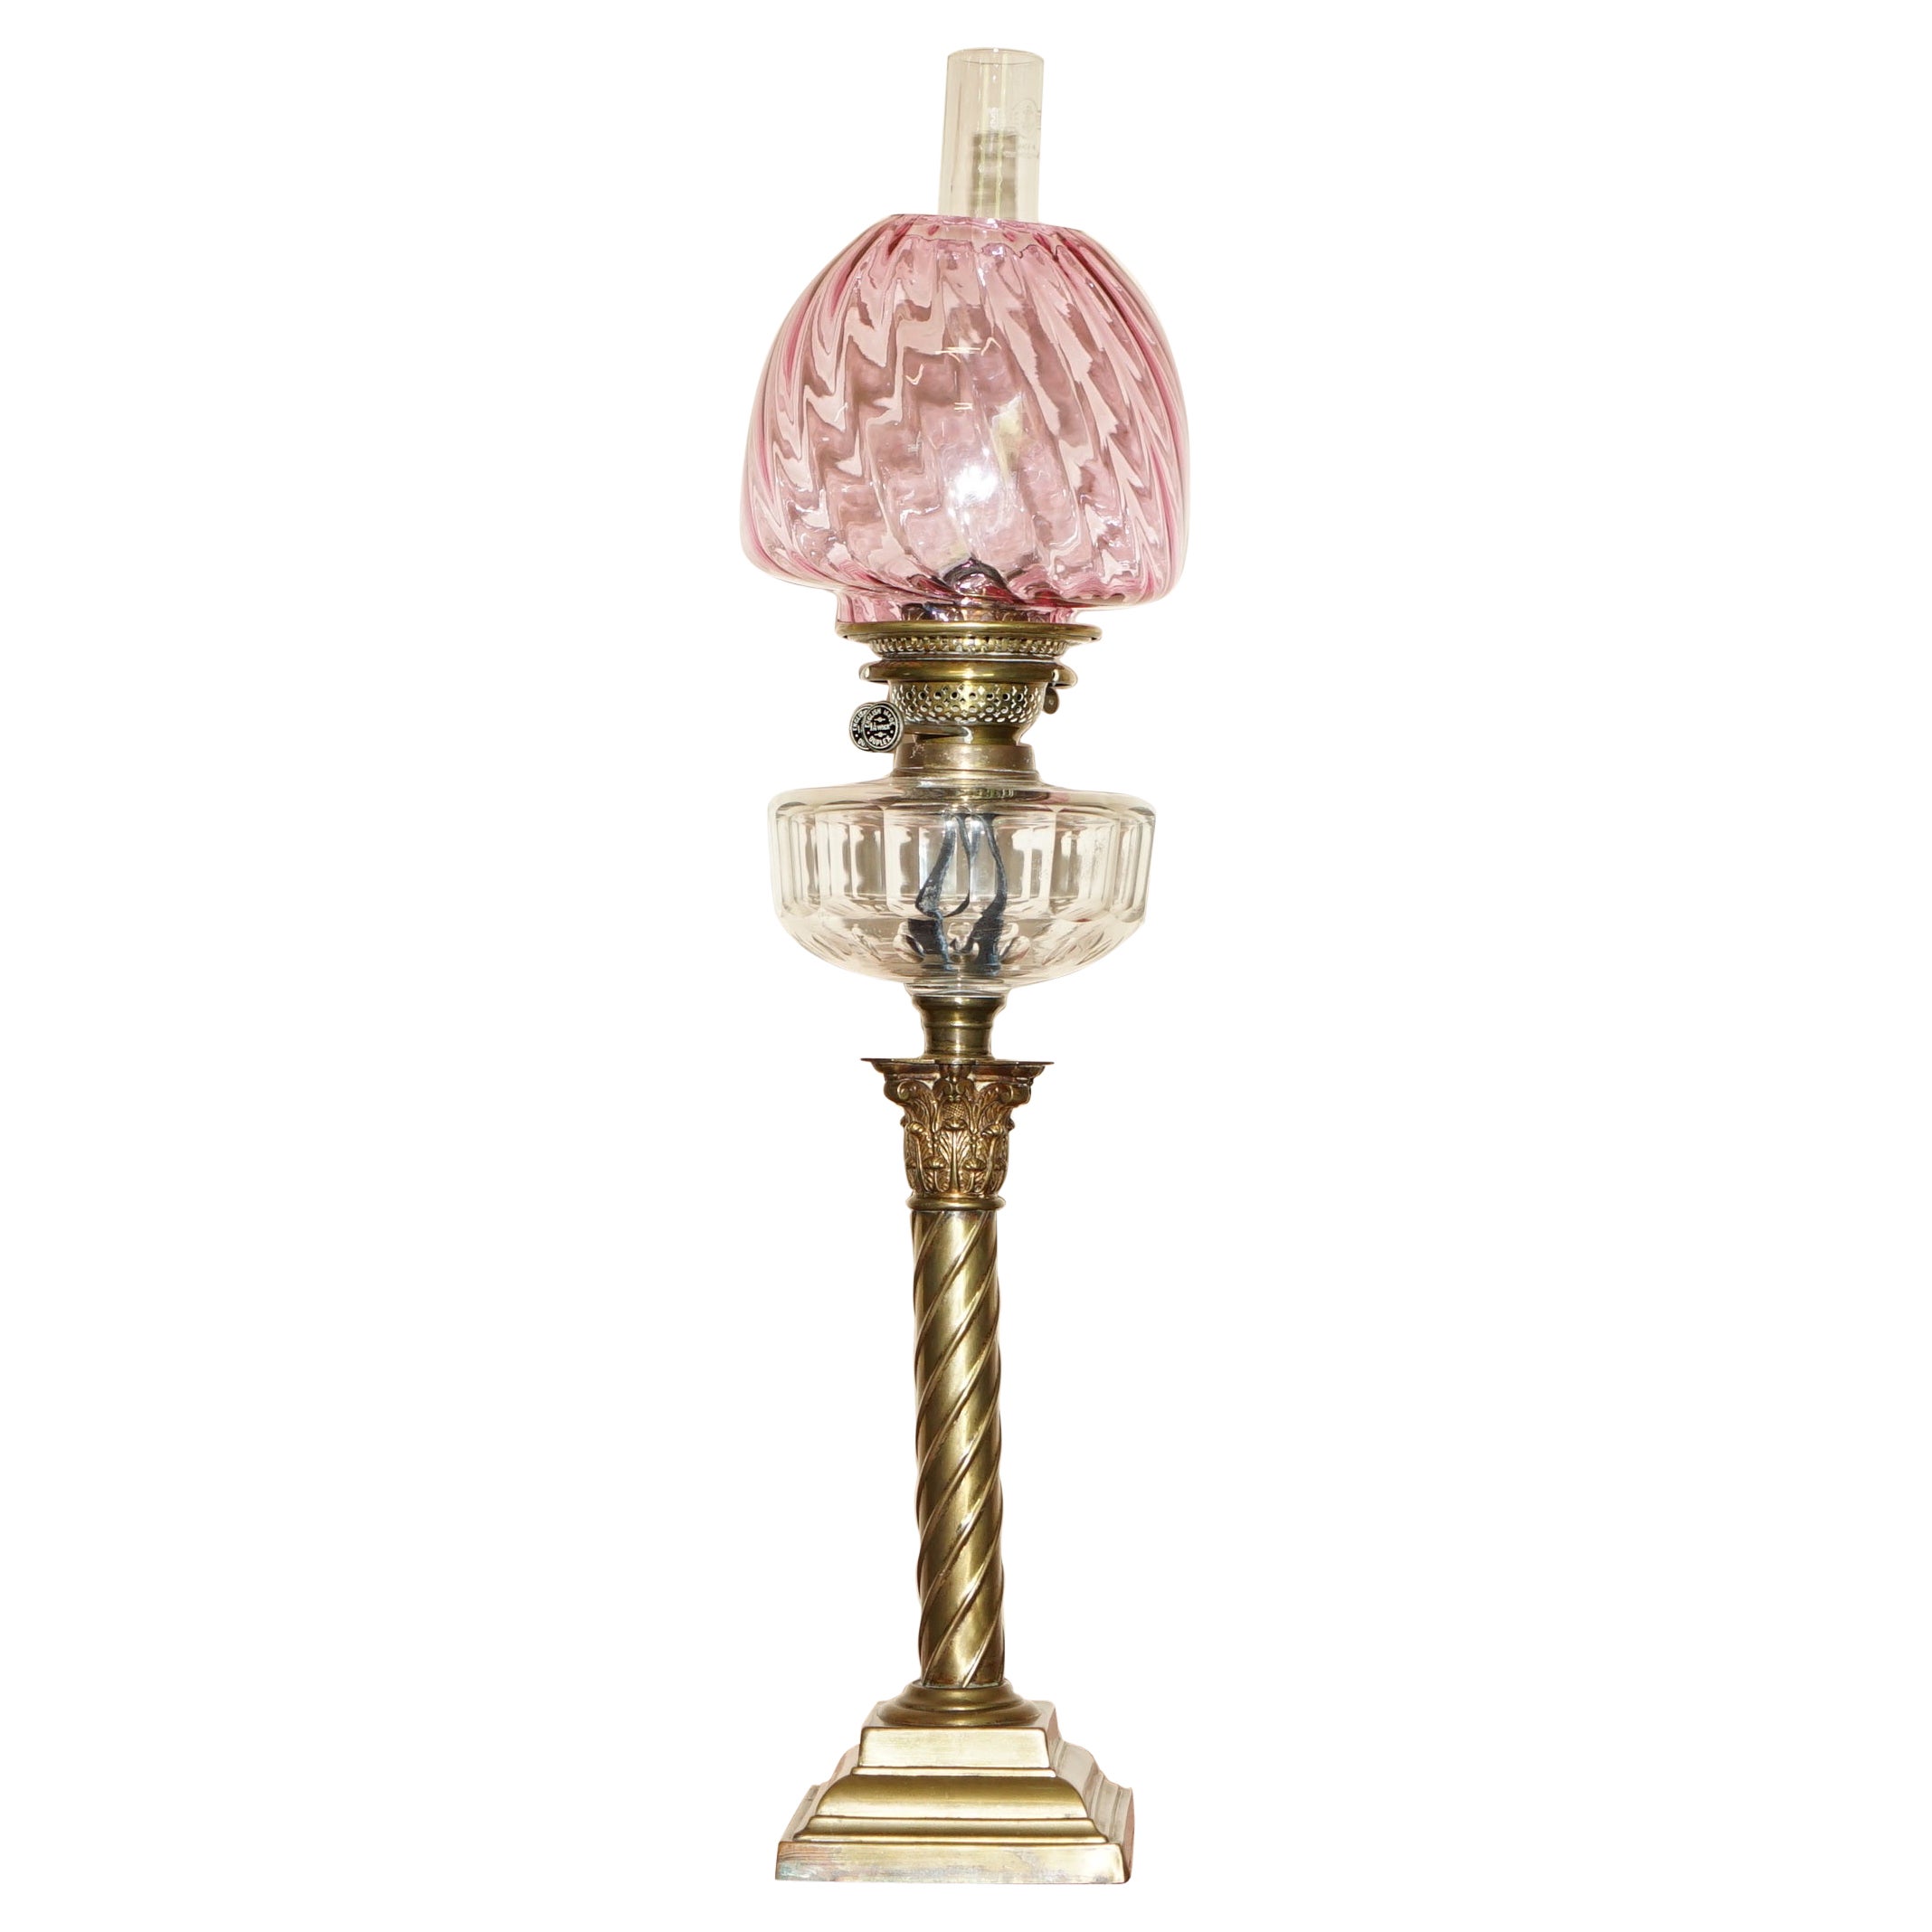 Anitique viktorianische Öllampe mit korinthischem Säulenfuß aus Rubinglas, Original